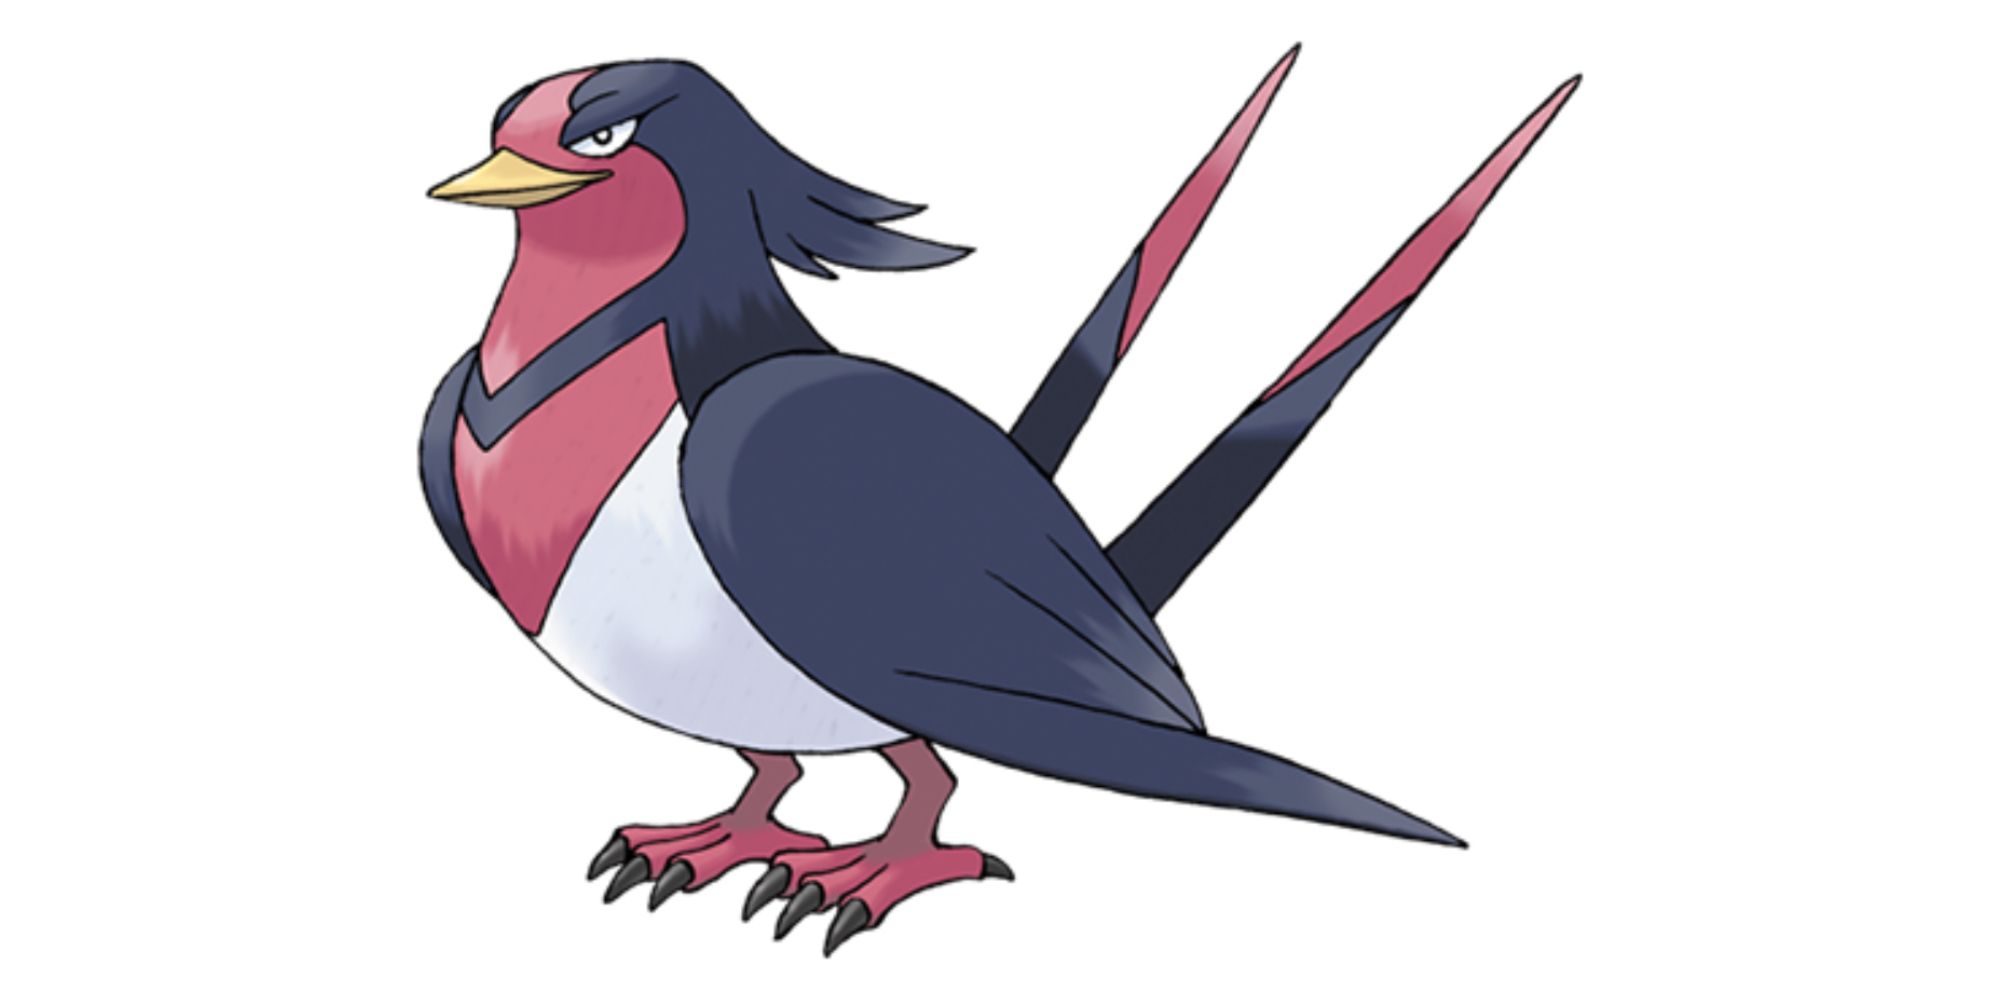 Самый сложный покемон, которого можно найти в Pokémon GO — Swellow — покемон летающего типа, который может использовать свои когти и крылья, чтобы атаковать покемонов.